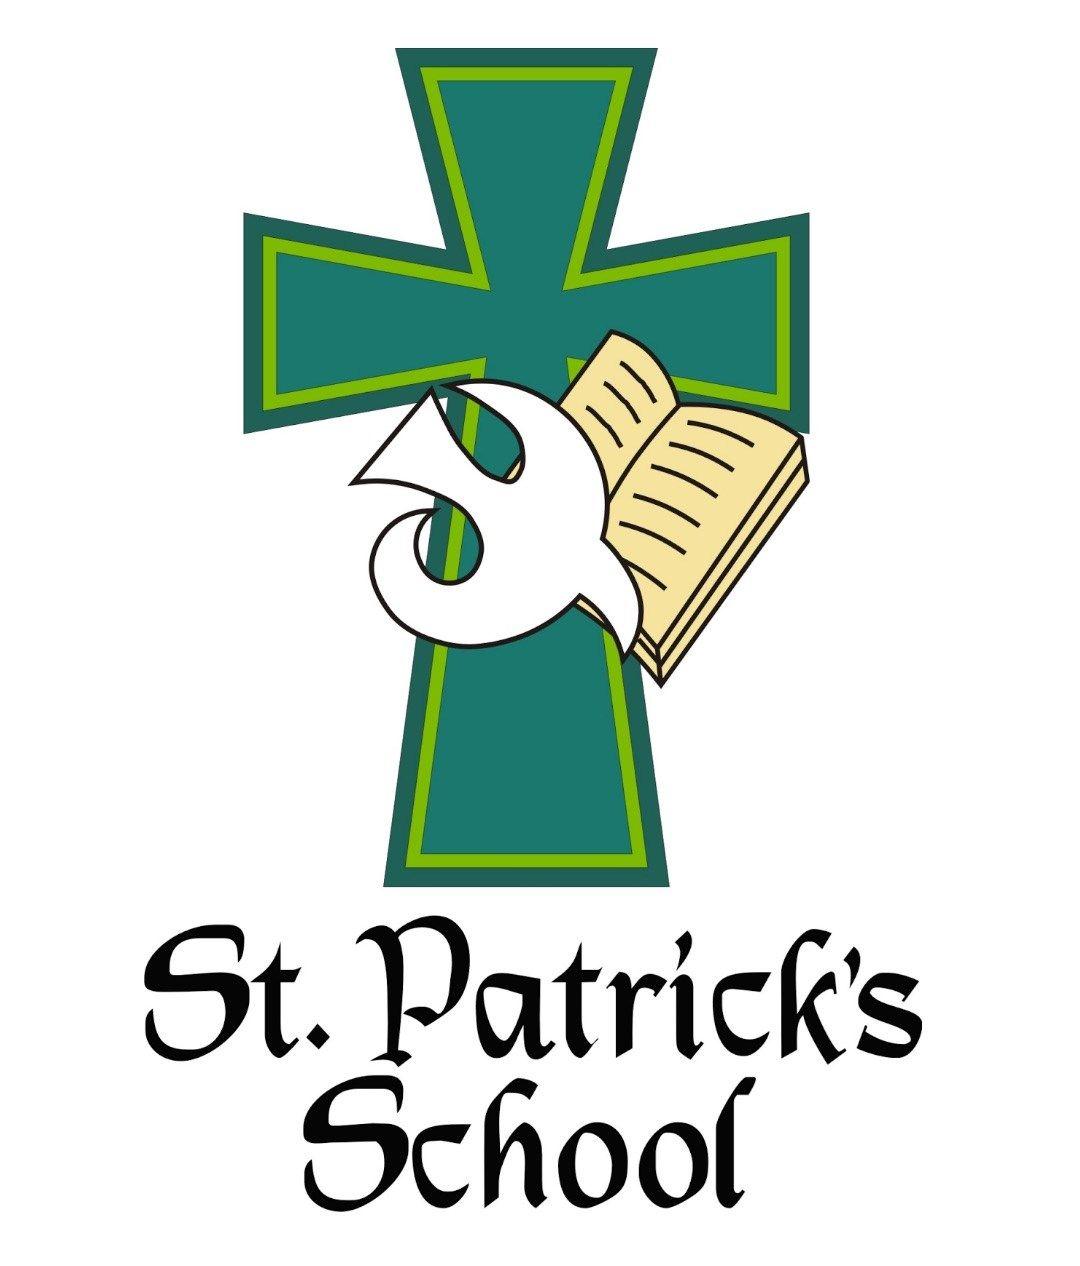 Patrick Logo - About. Patrick's School